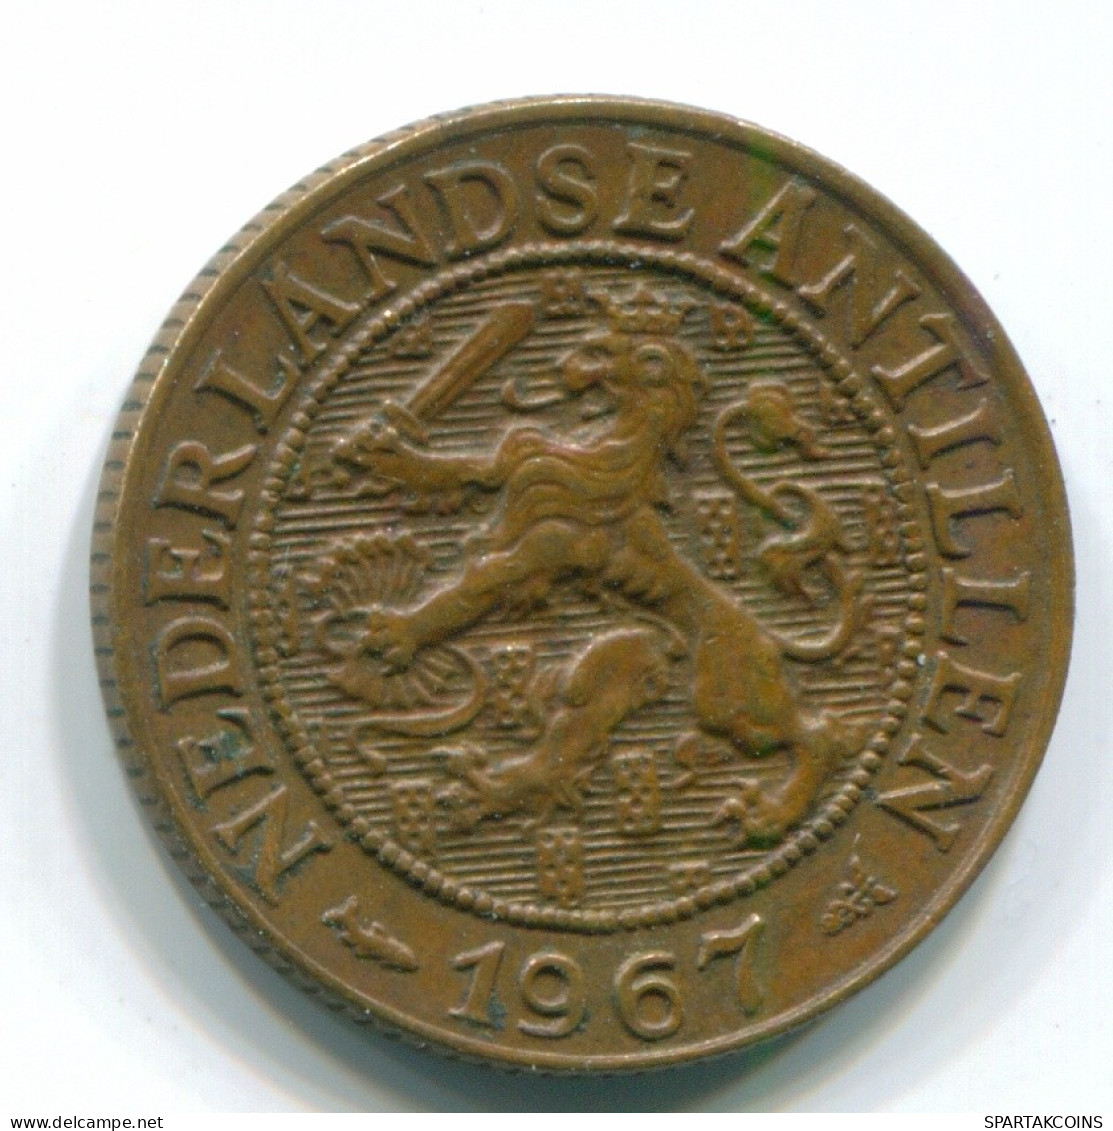 1 CENT 1967 NIEDERLÄNDISCHE ANTILLEN Bronze Fish Koloniale Münze #S11139.D.A - Niederländische Antillen